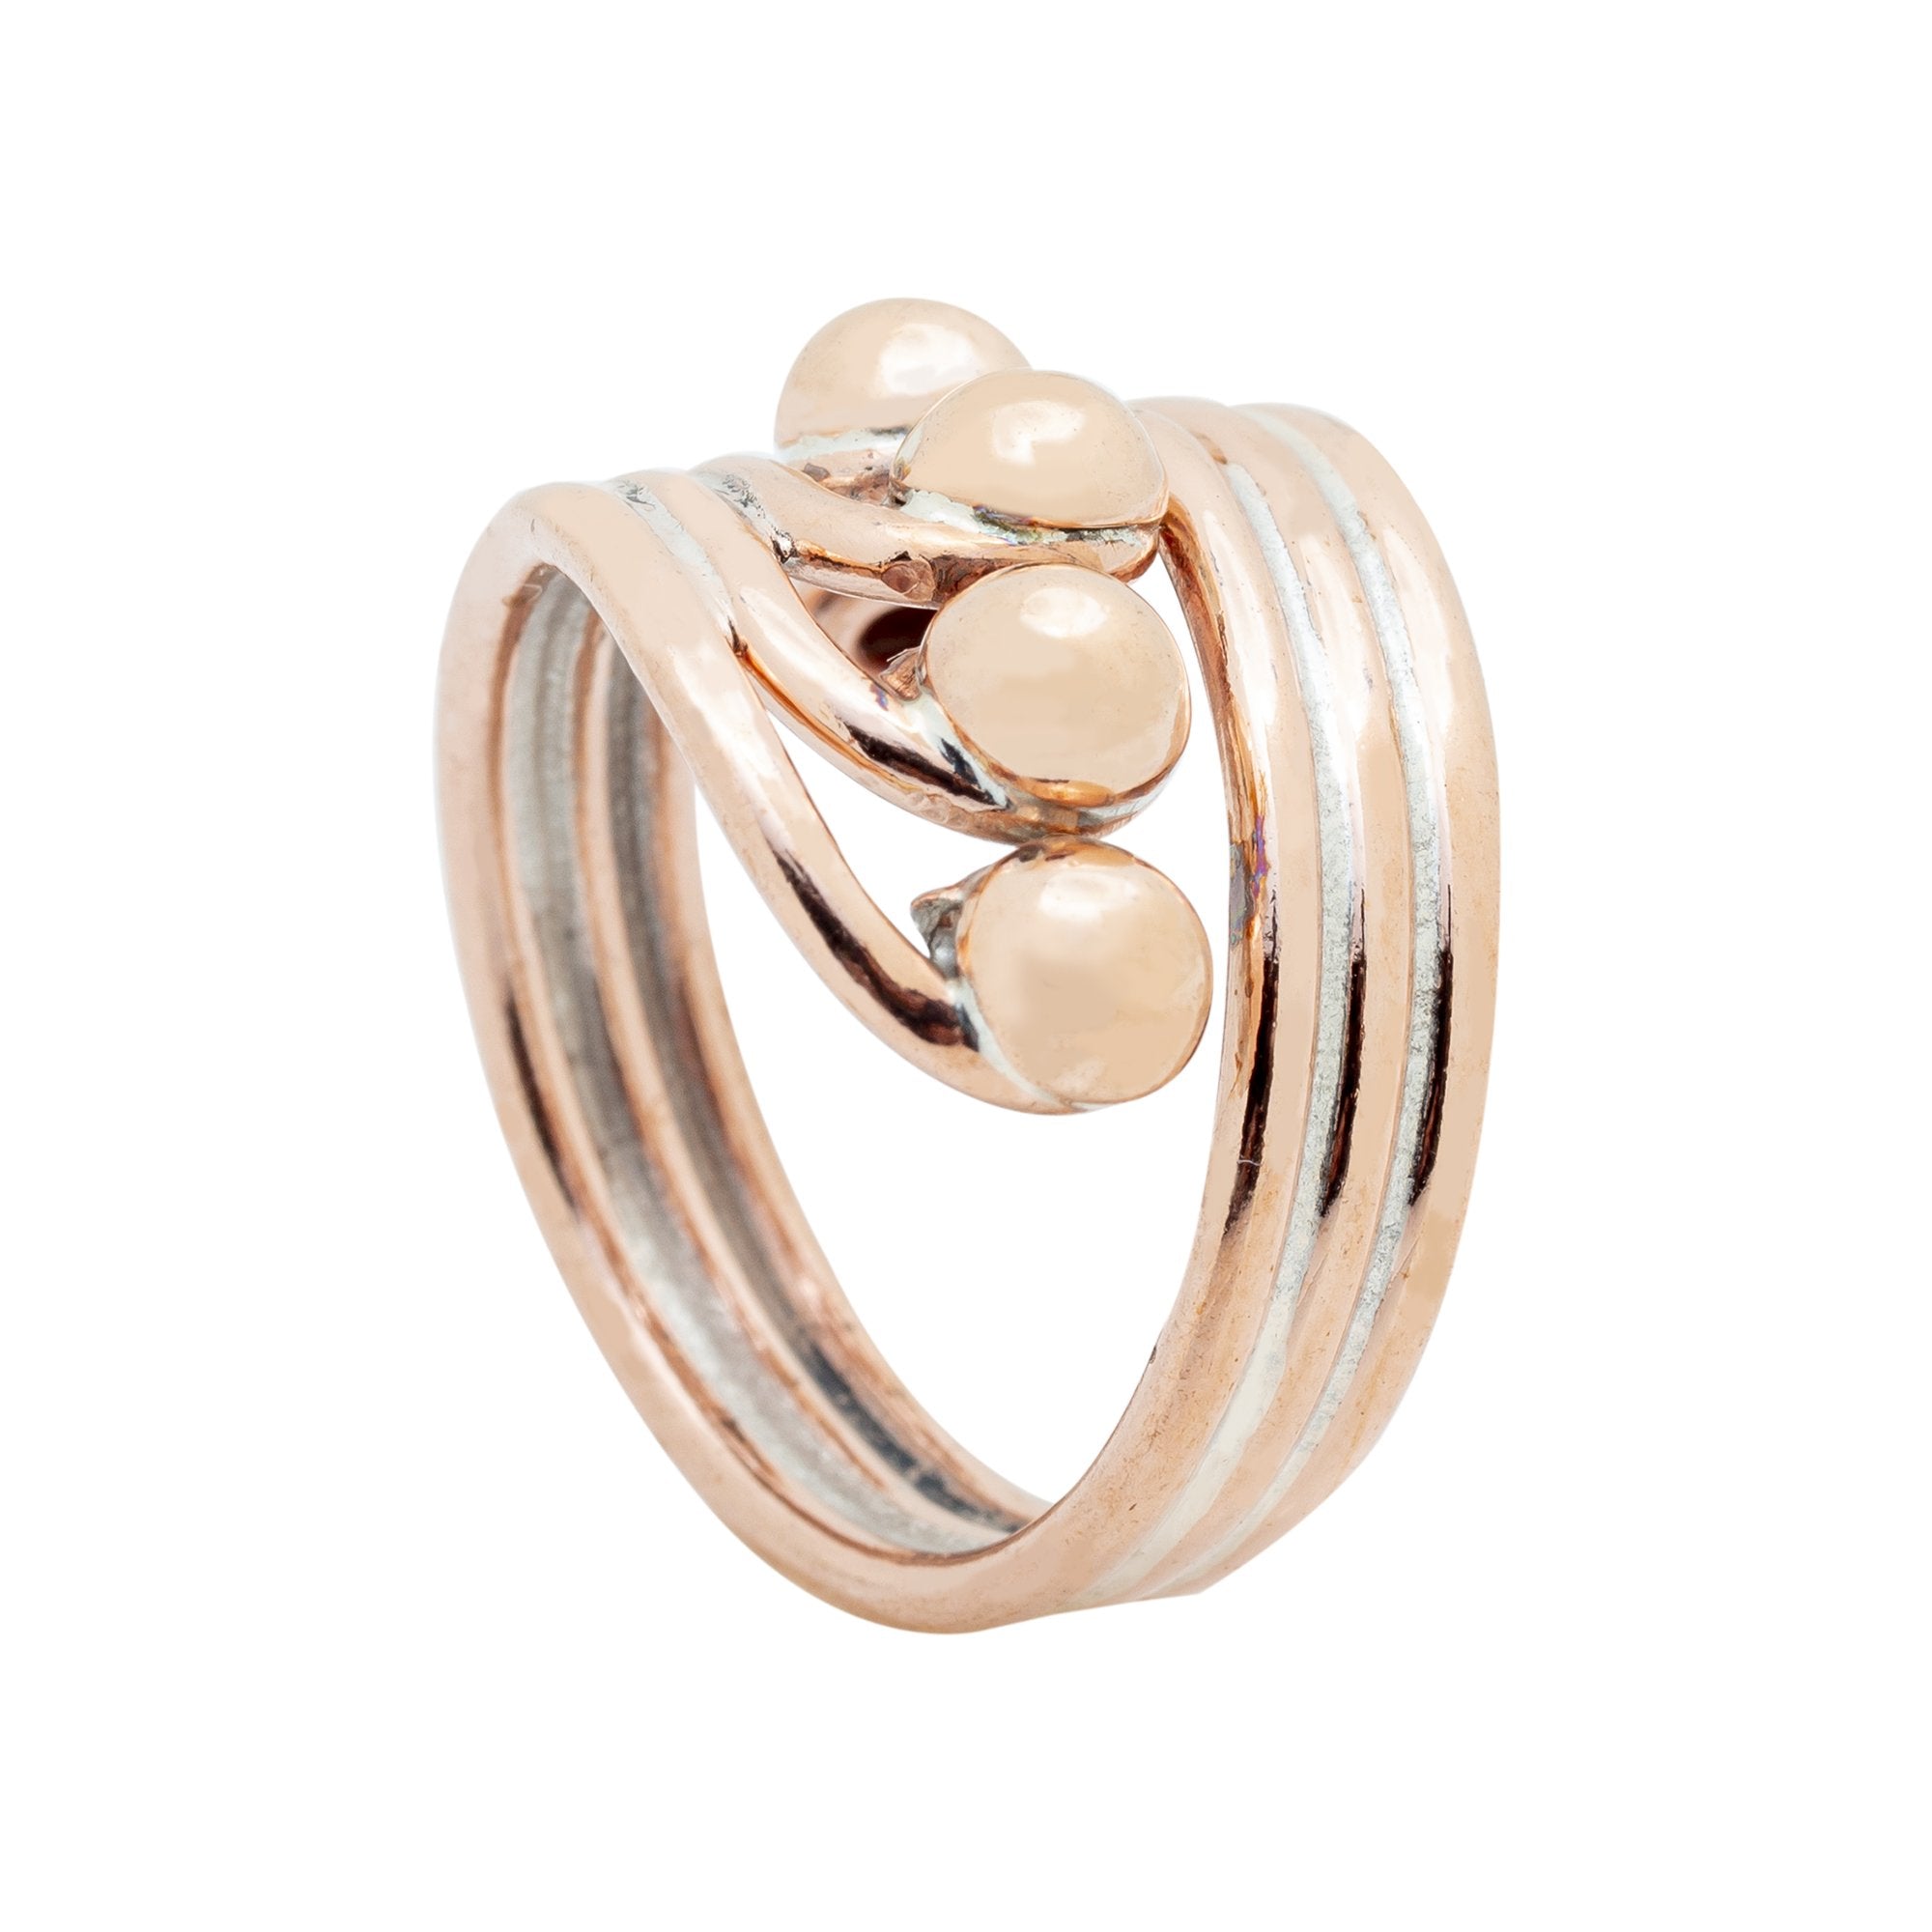 RG.FEL.4007 - Copper Ring